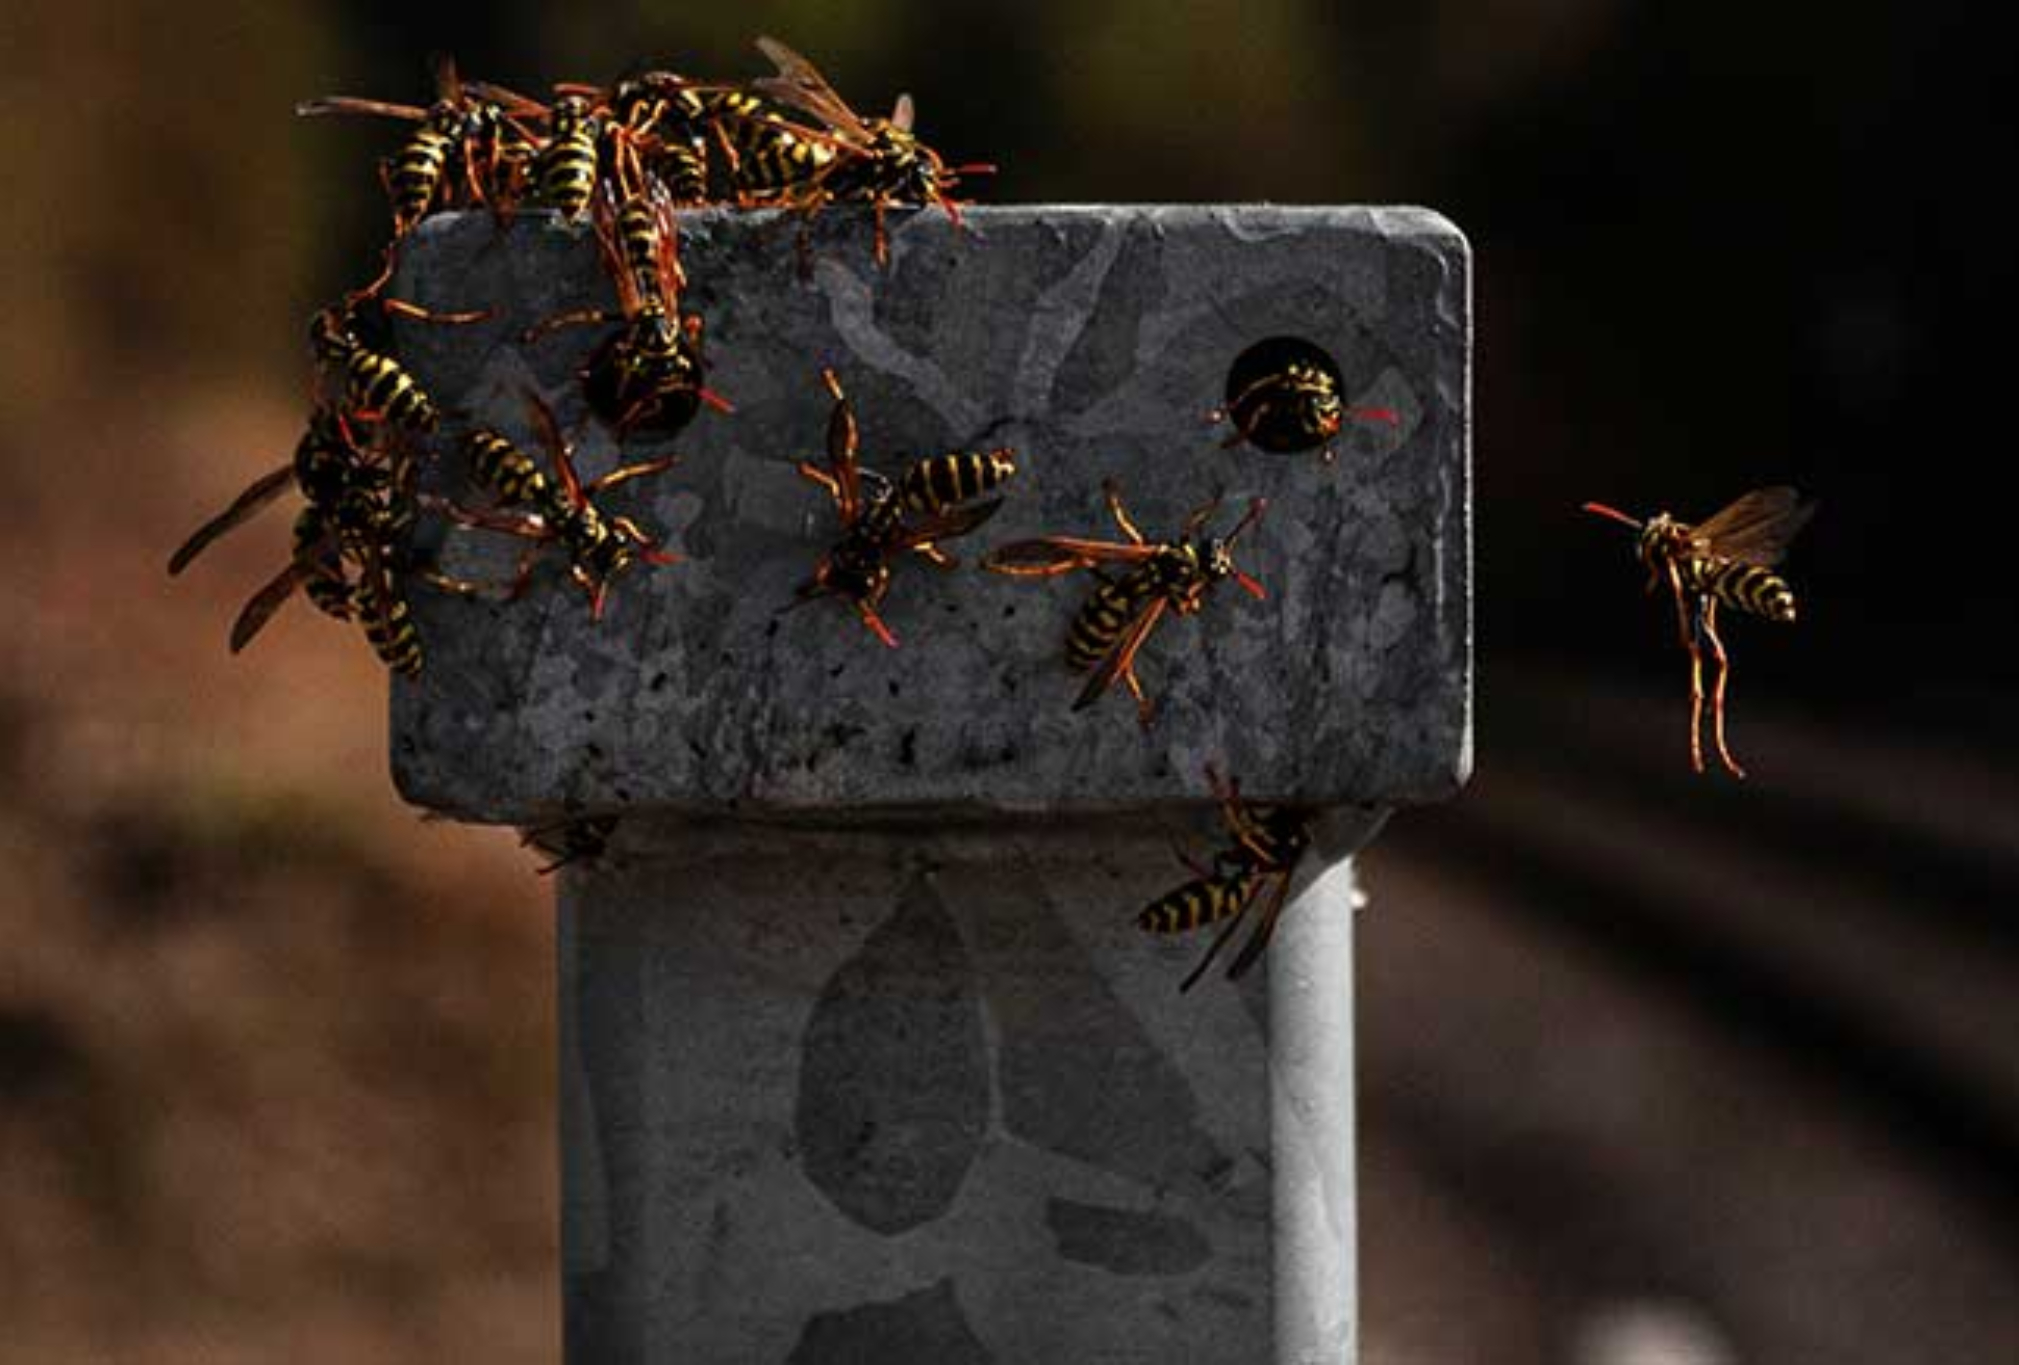 Σφήκες η φωλιά σφήκας στο σπίτι: Καταπολεμήστε οριστικά το επικύνδινο αυτό έντομο